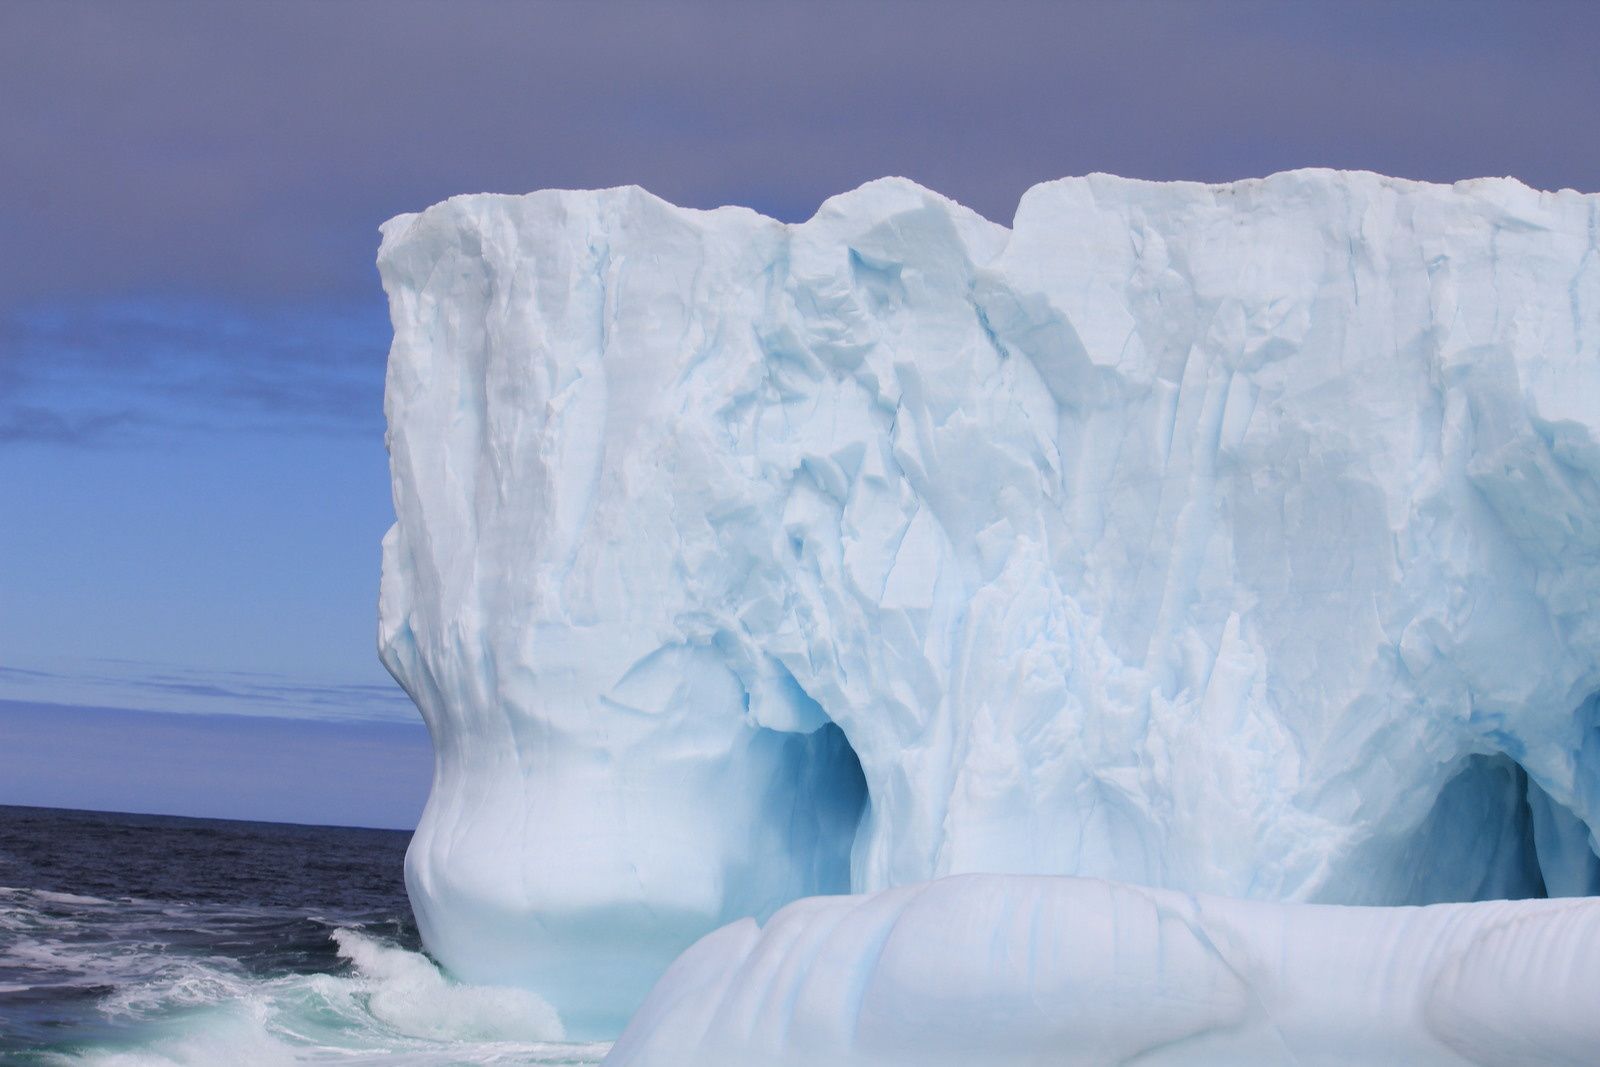 Certaines formes sont spectaculaires. La couleur et la texture des icebergs sont aussi intéressantes. Parfois il y a des roches prises dans le iceberg. Ce sont de véritables œuvres d'art de la nature.